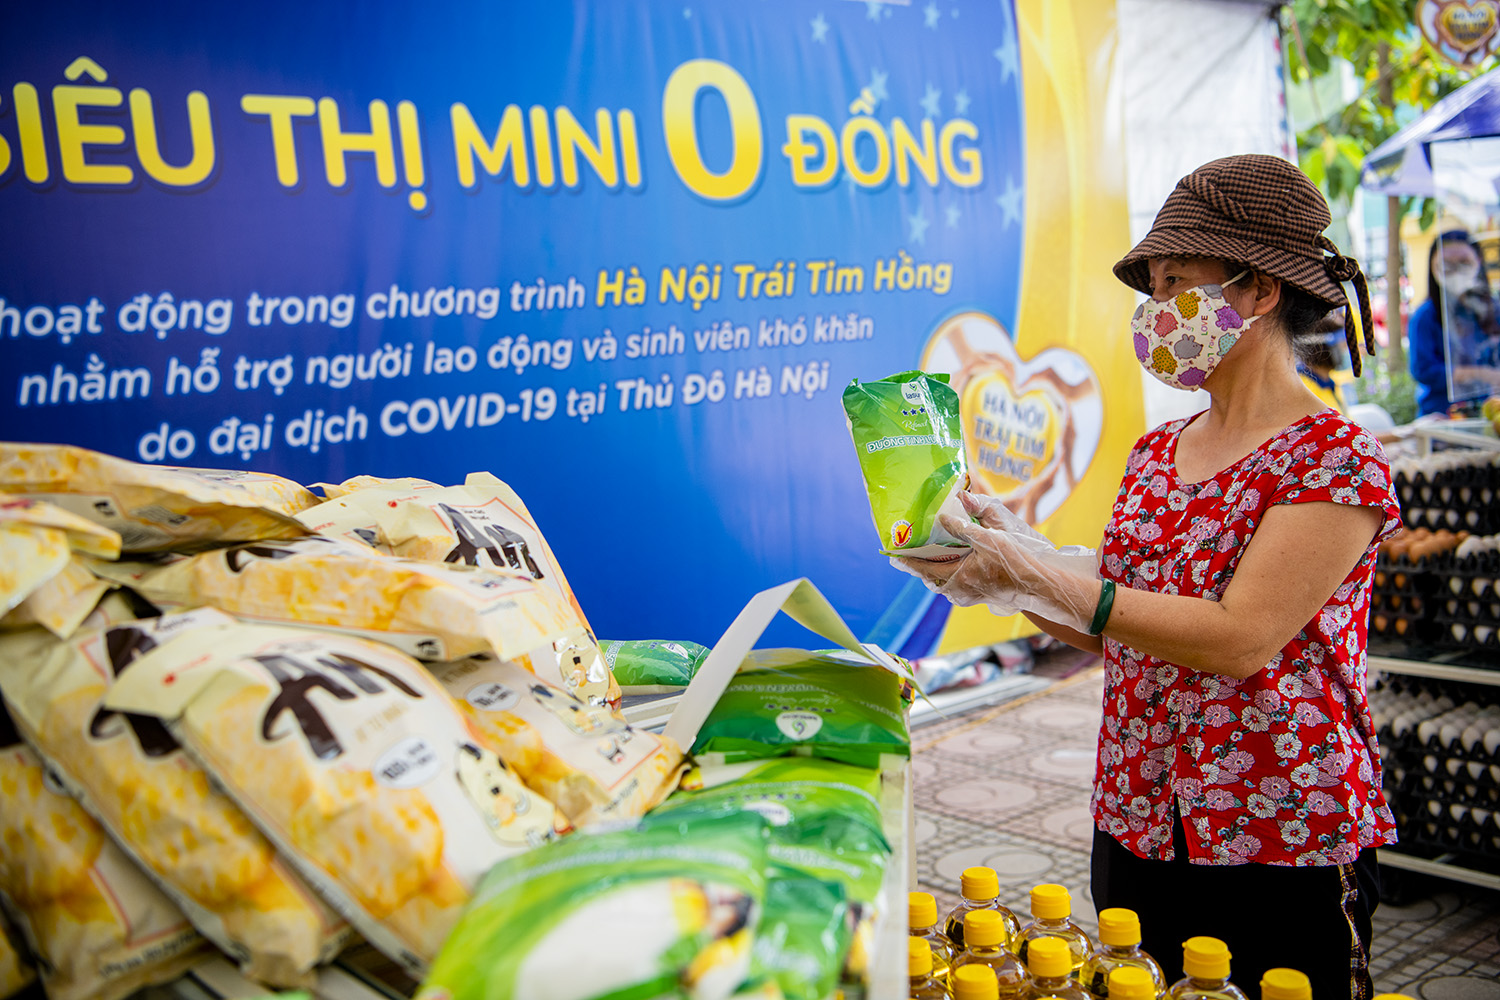 “Siêu thị mini 0 đồng’’ đầu tiên tại Hà Nội đã chính thức hoạt động, vị trí thí điểm đầu tiên tại khu vực sân trụ sở UBND phường Đức Thắng (Bắc Từ Liêm).